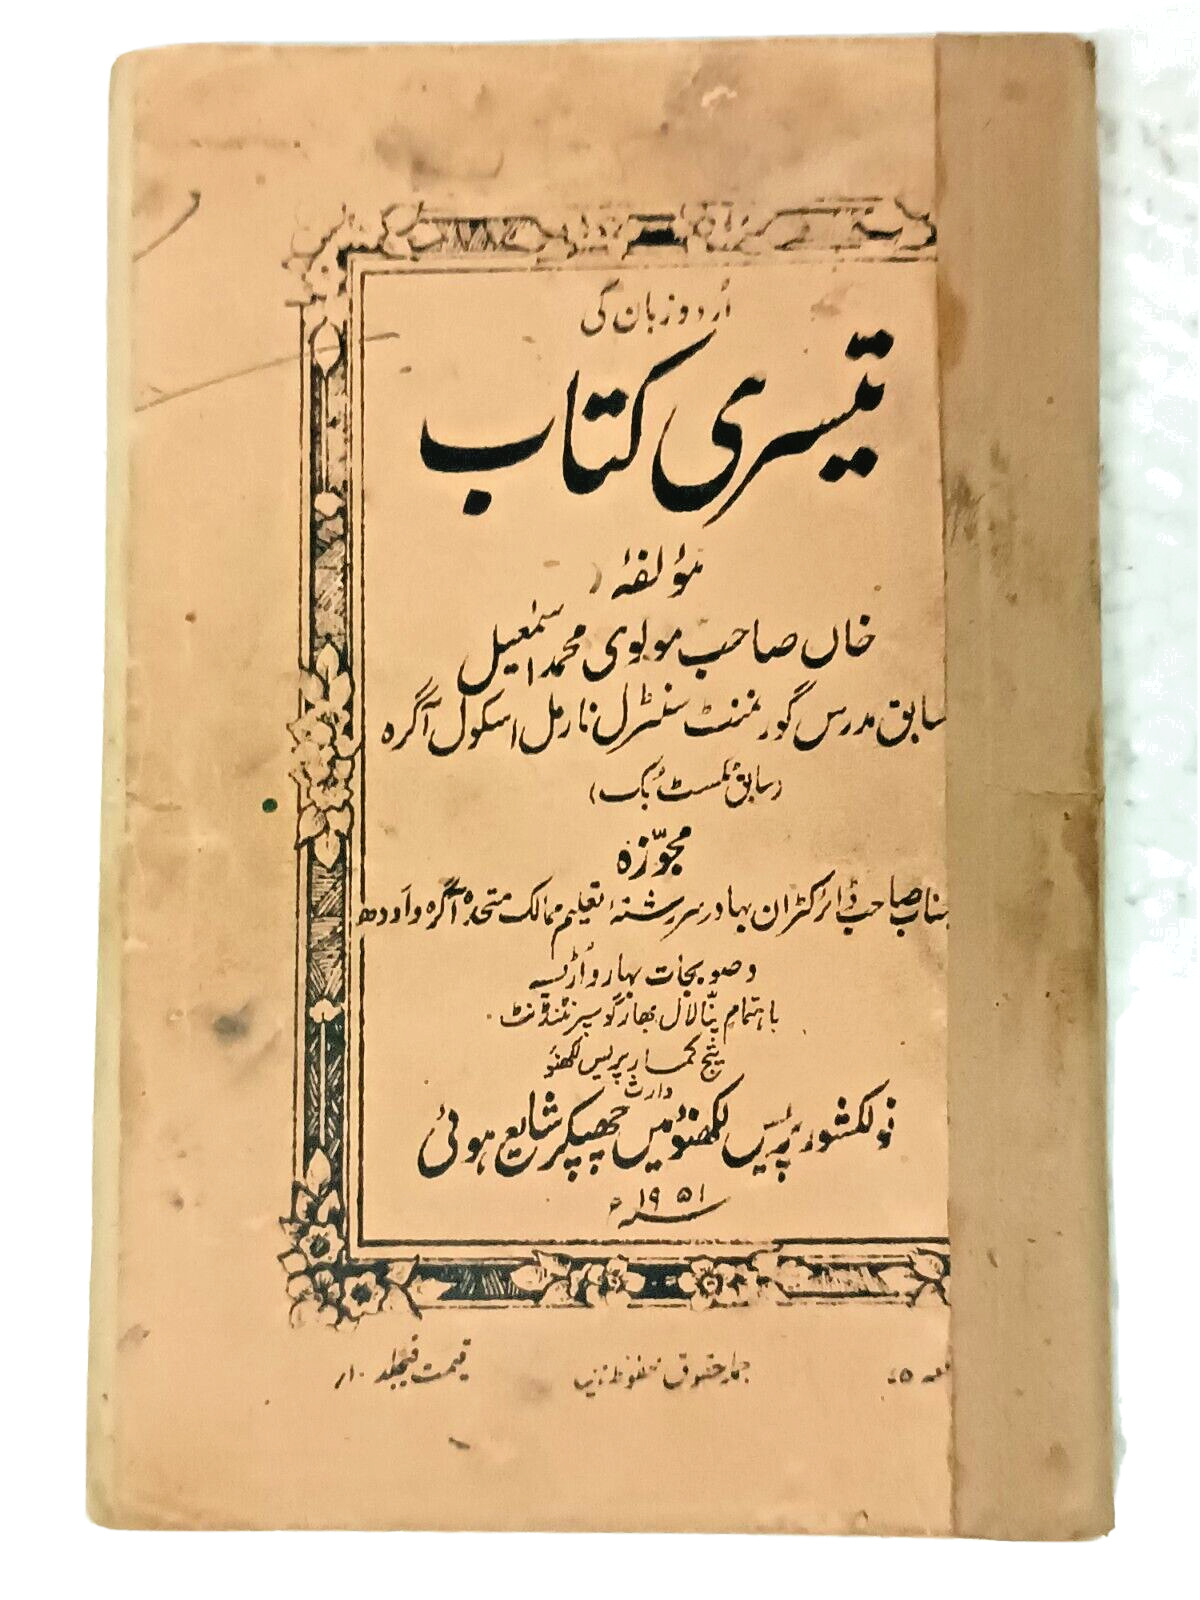 INDIA VINTAGE PRINTED BOOK URDU: 1951 BOOK THREE BY KHAN SAHIB MAULVI MOHMMAD